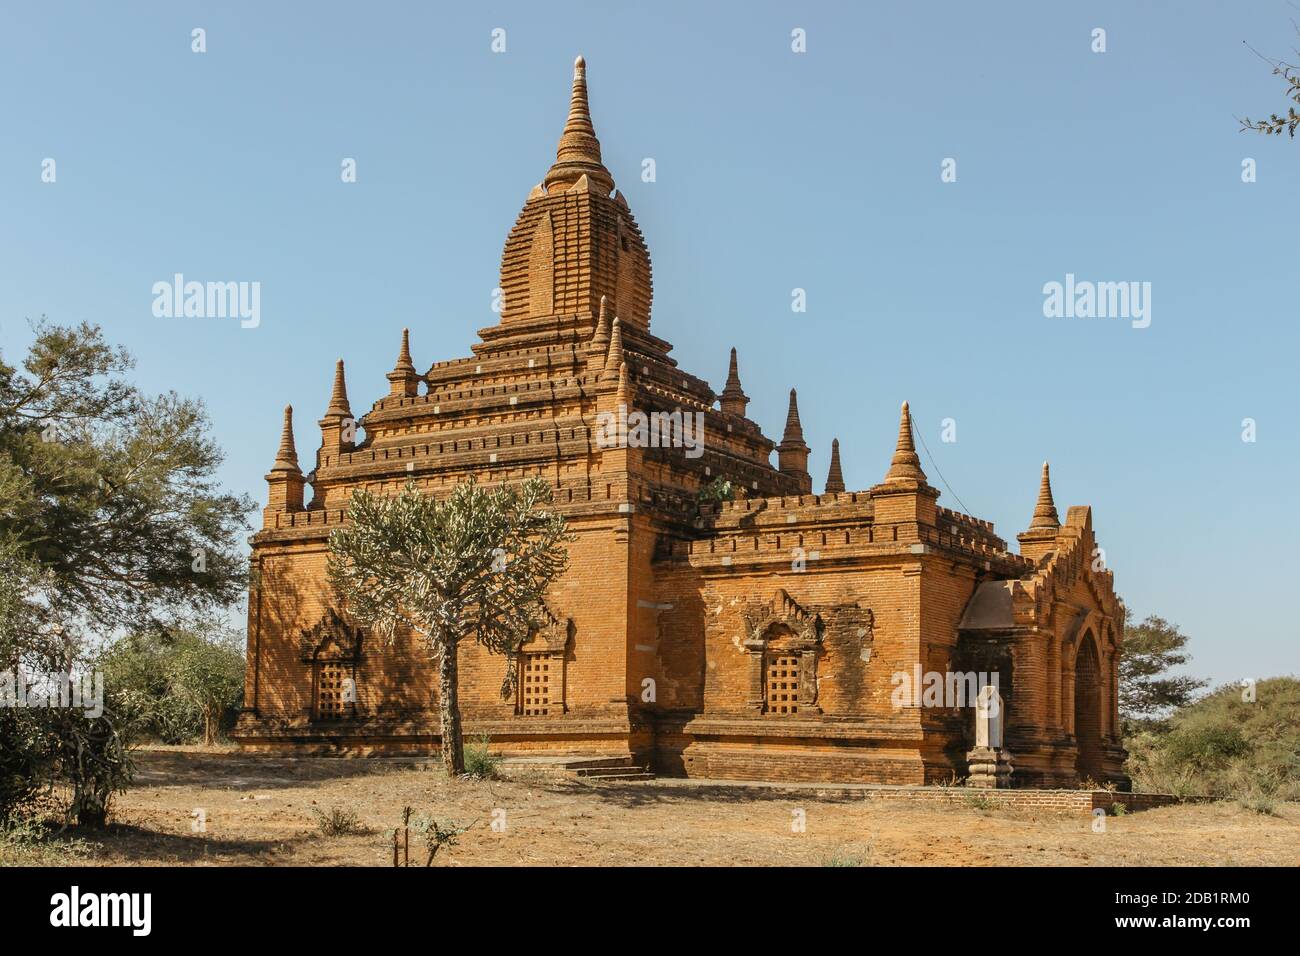 Old Bagan, Myanmar - 27 janvier 2020. Pagode bouddhiste antique. Panorama des vieux temples à Bagan. Groupe de pagodes anciennes avec statue de Bouddha.exotique Banque D'Images